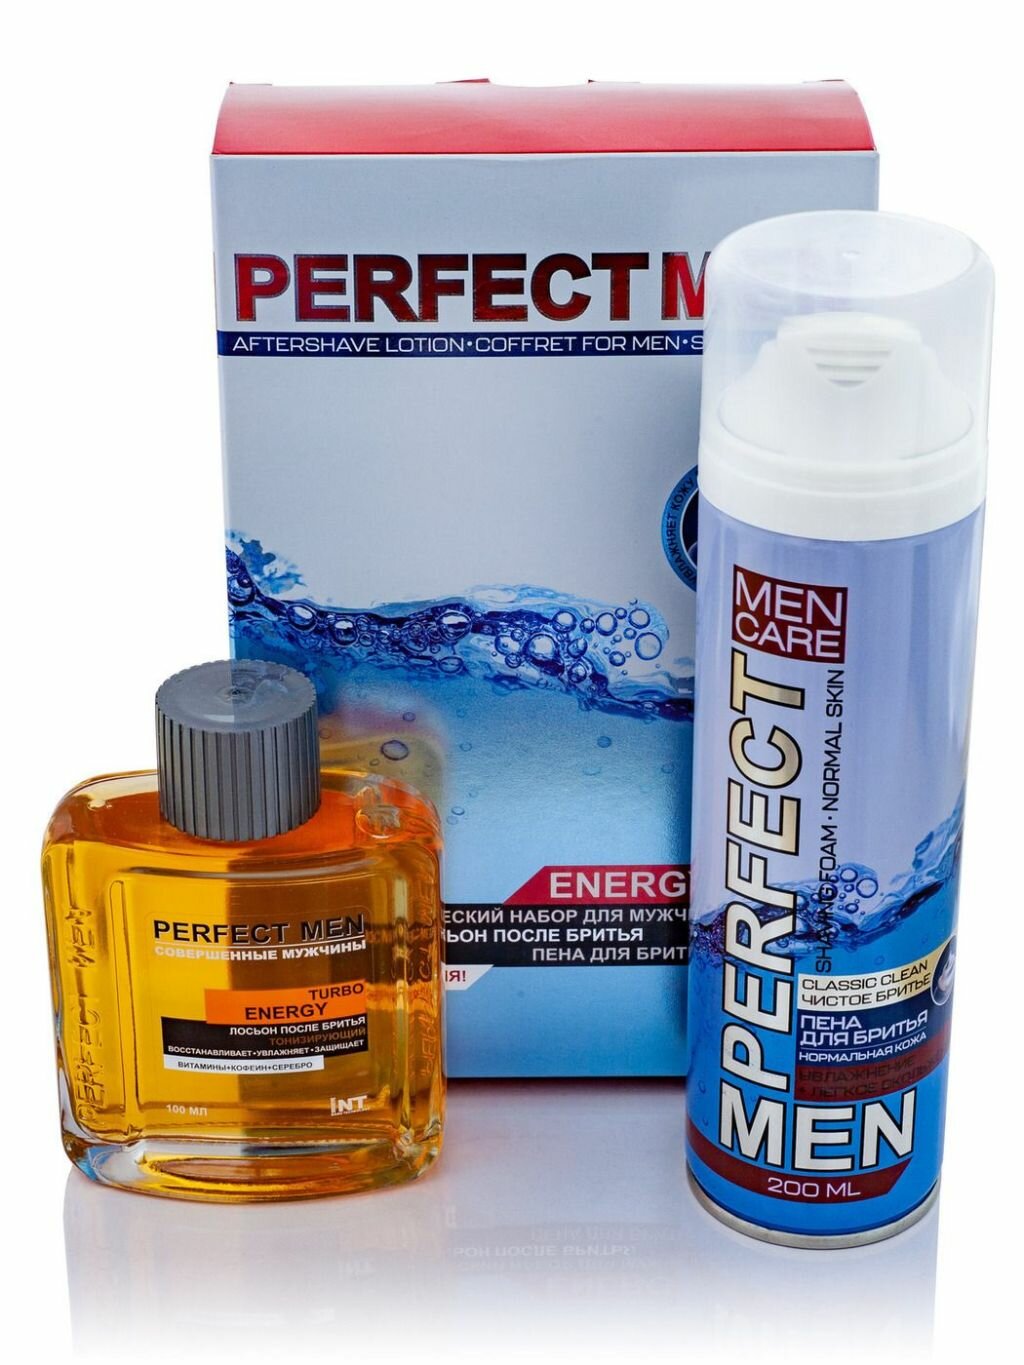 Набор из 3 штук Косметический набор для мужчин Perfect men Turbo Energy Лосьон после бритья 100мл, Пена для бритья 2